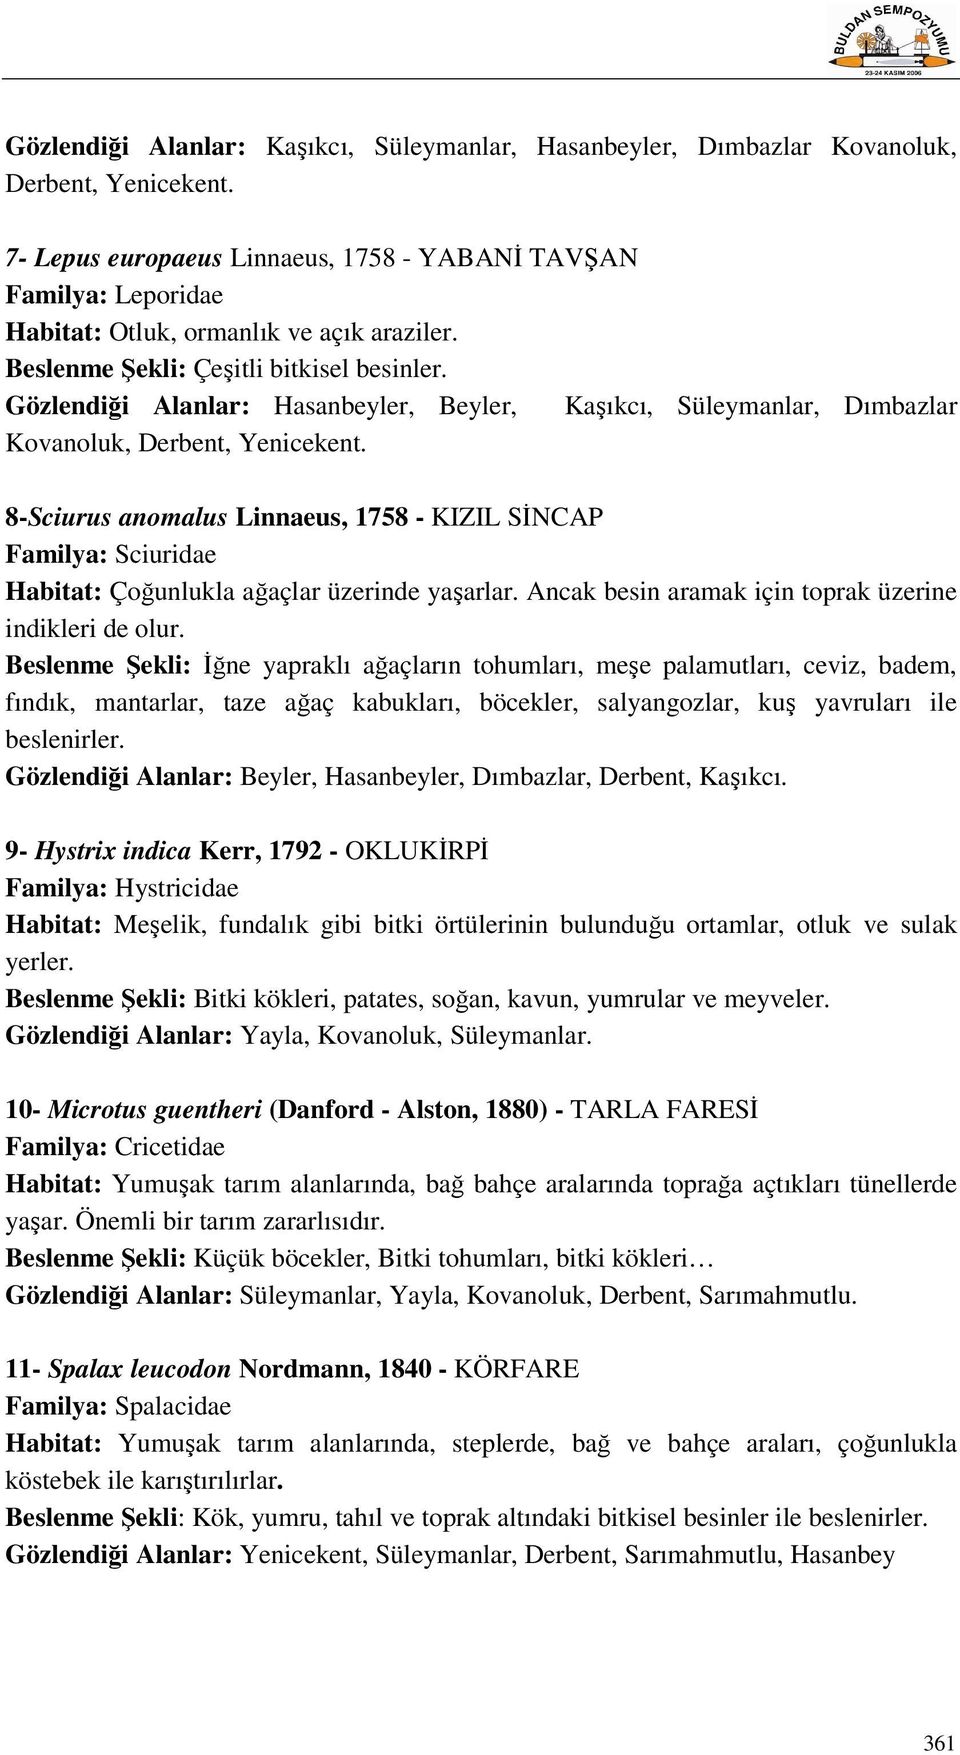 Gözlendiği Alanlar: Hasanbeyler, Beyler, Kaşıkcı, Süleymanlar, Dımbazlar Kovanoluk, Derbent, Yenicekent.